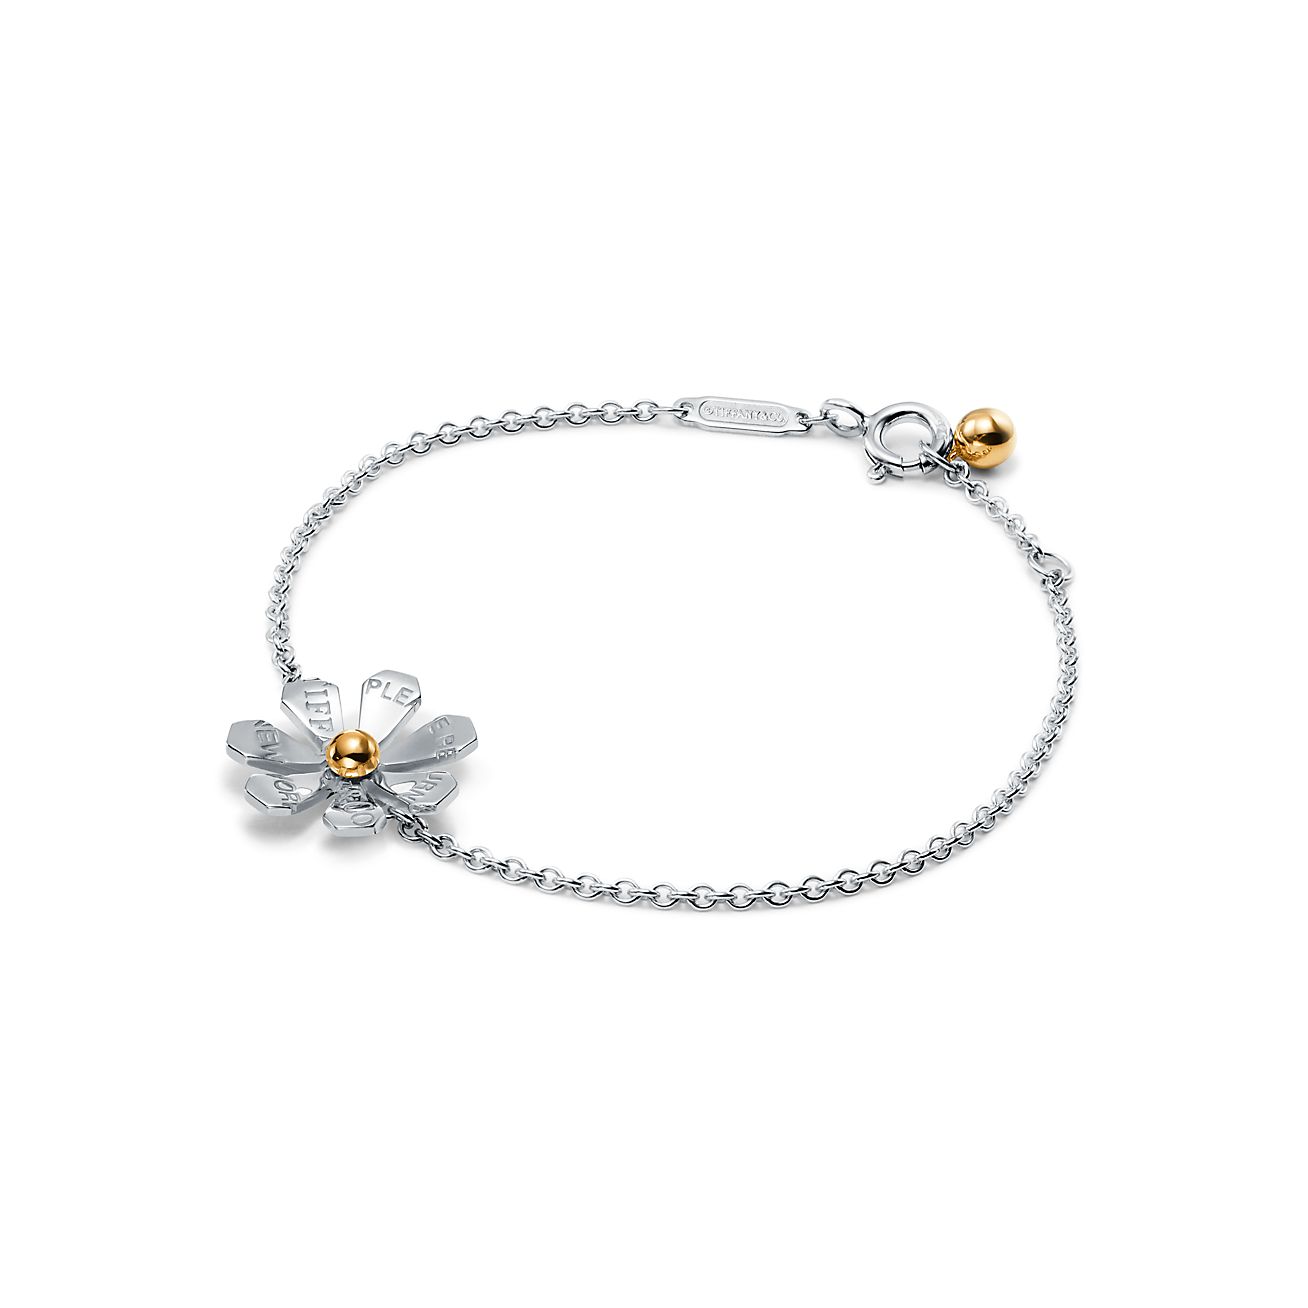 Love Bugs daisy chain bracelet in 